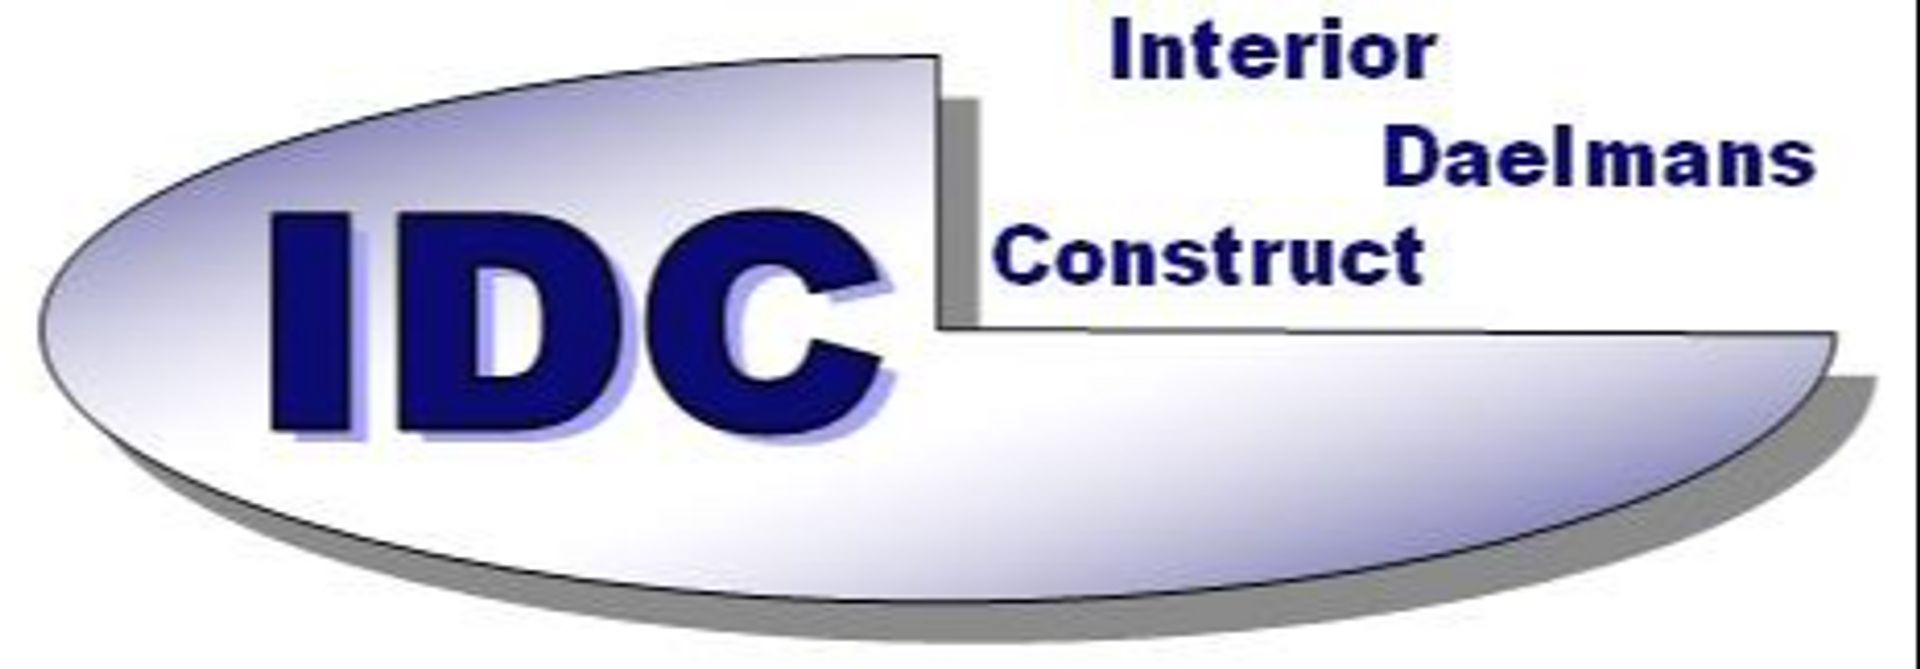 IDC - Interior Daelmans Construct